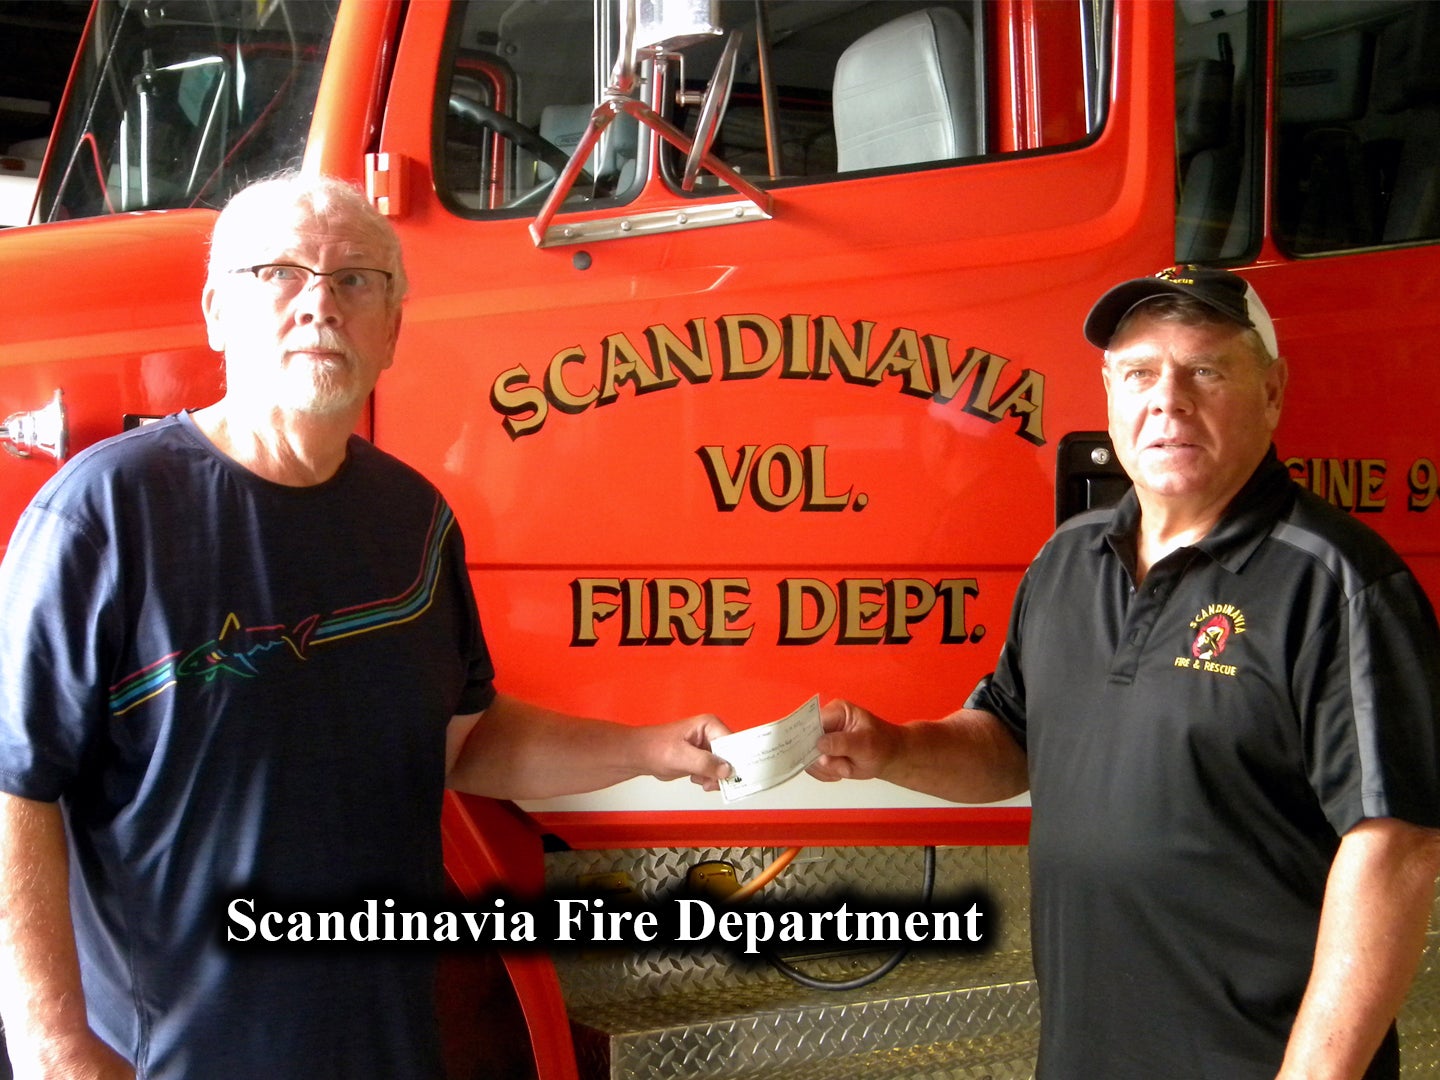 Scandinavia Fire Department